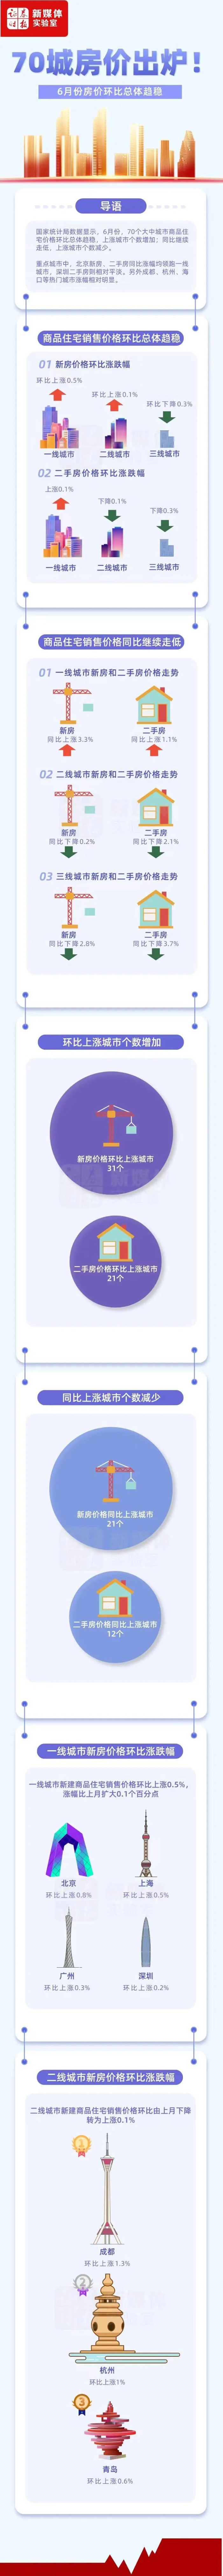 深圳二手房价格出现下跌回到2020年水平